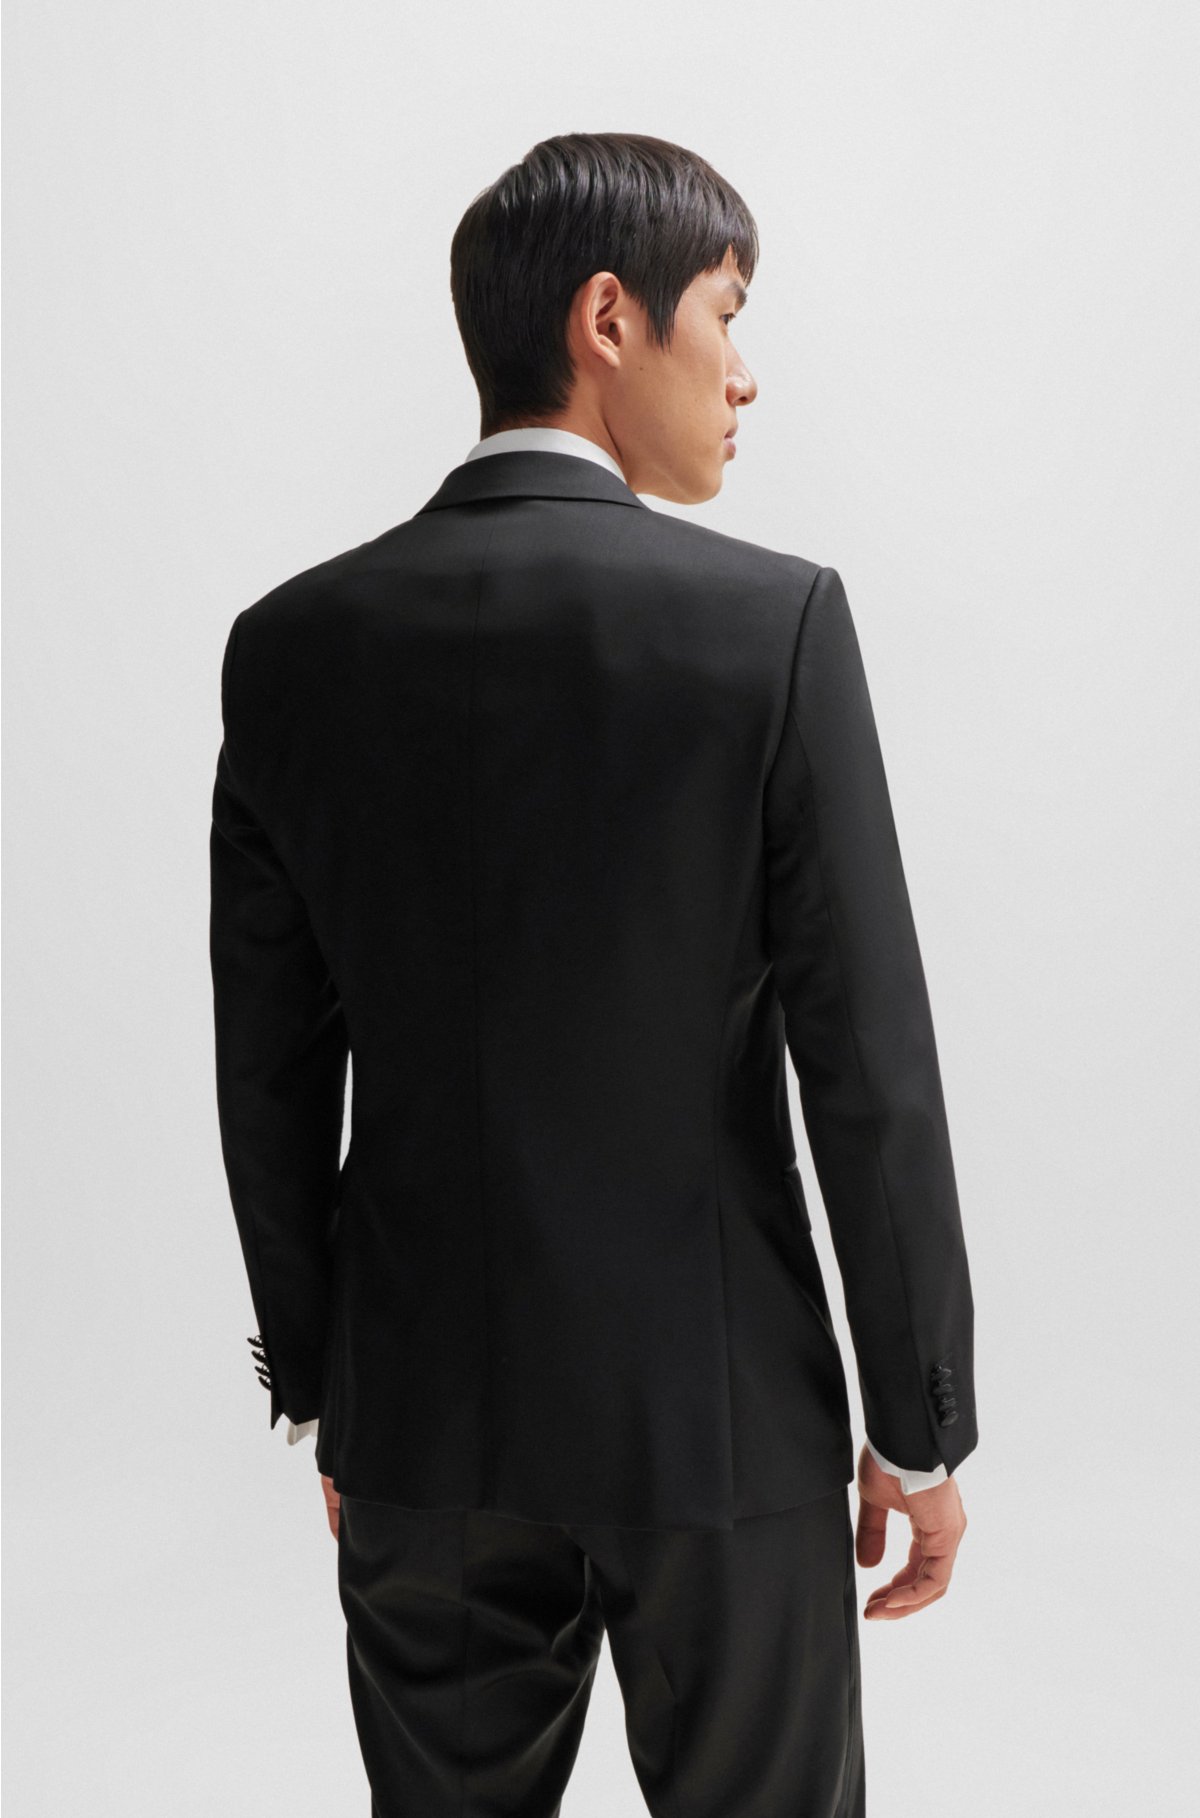 Slim-fit tuxedo jacket in virgin-wool serge, Black